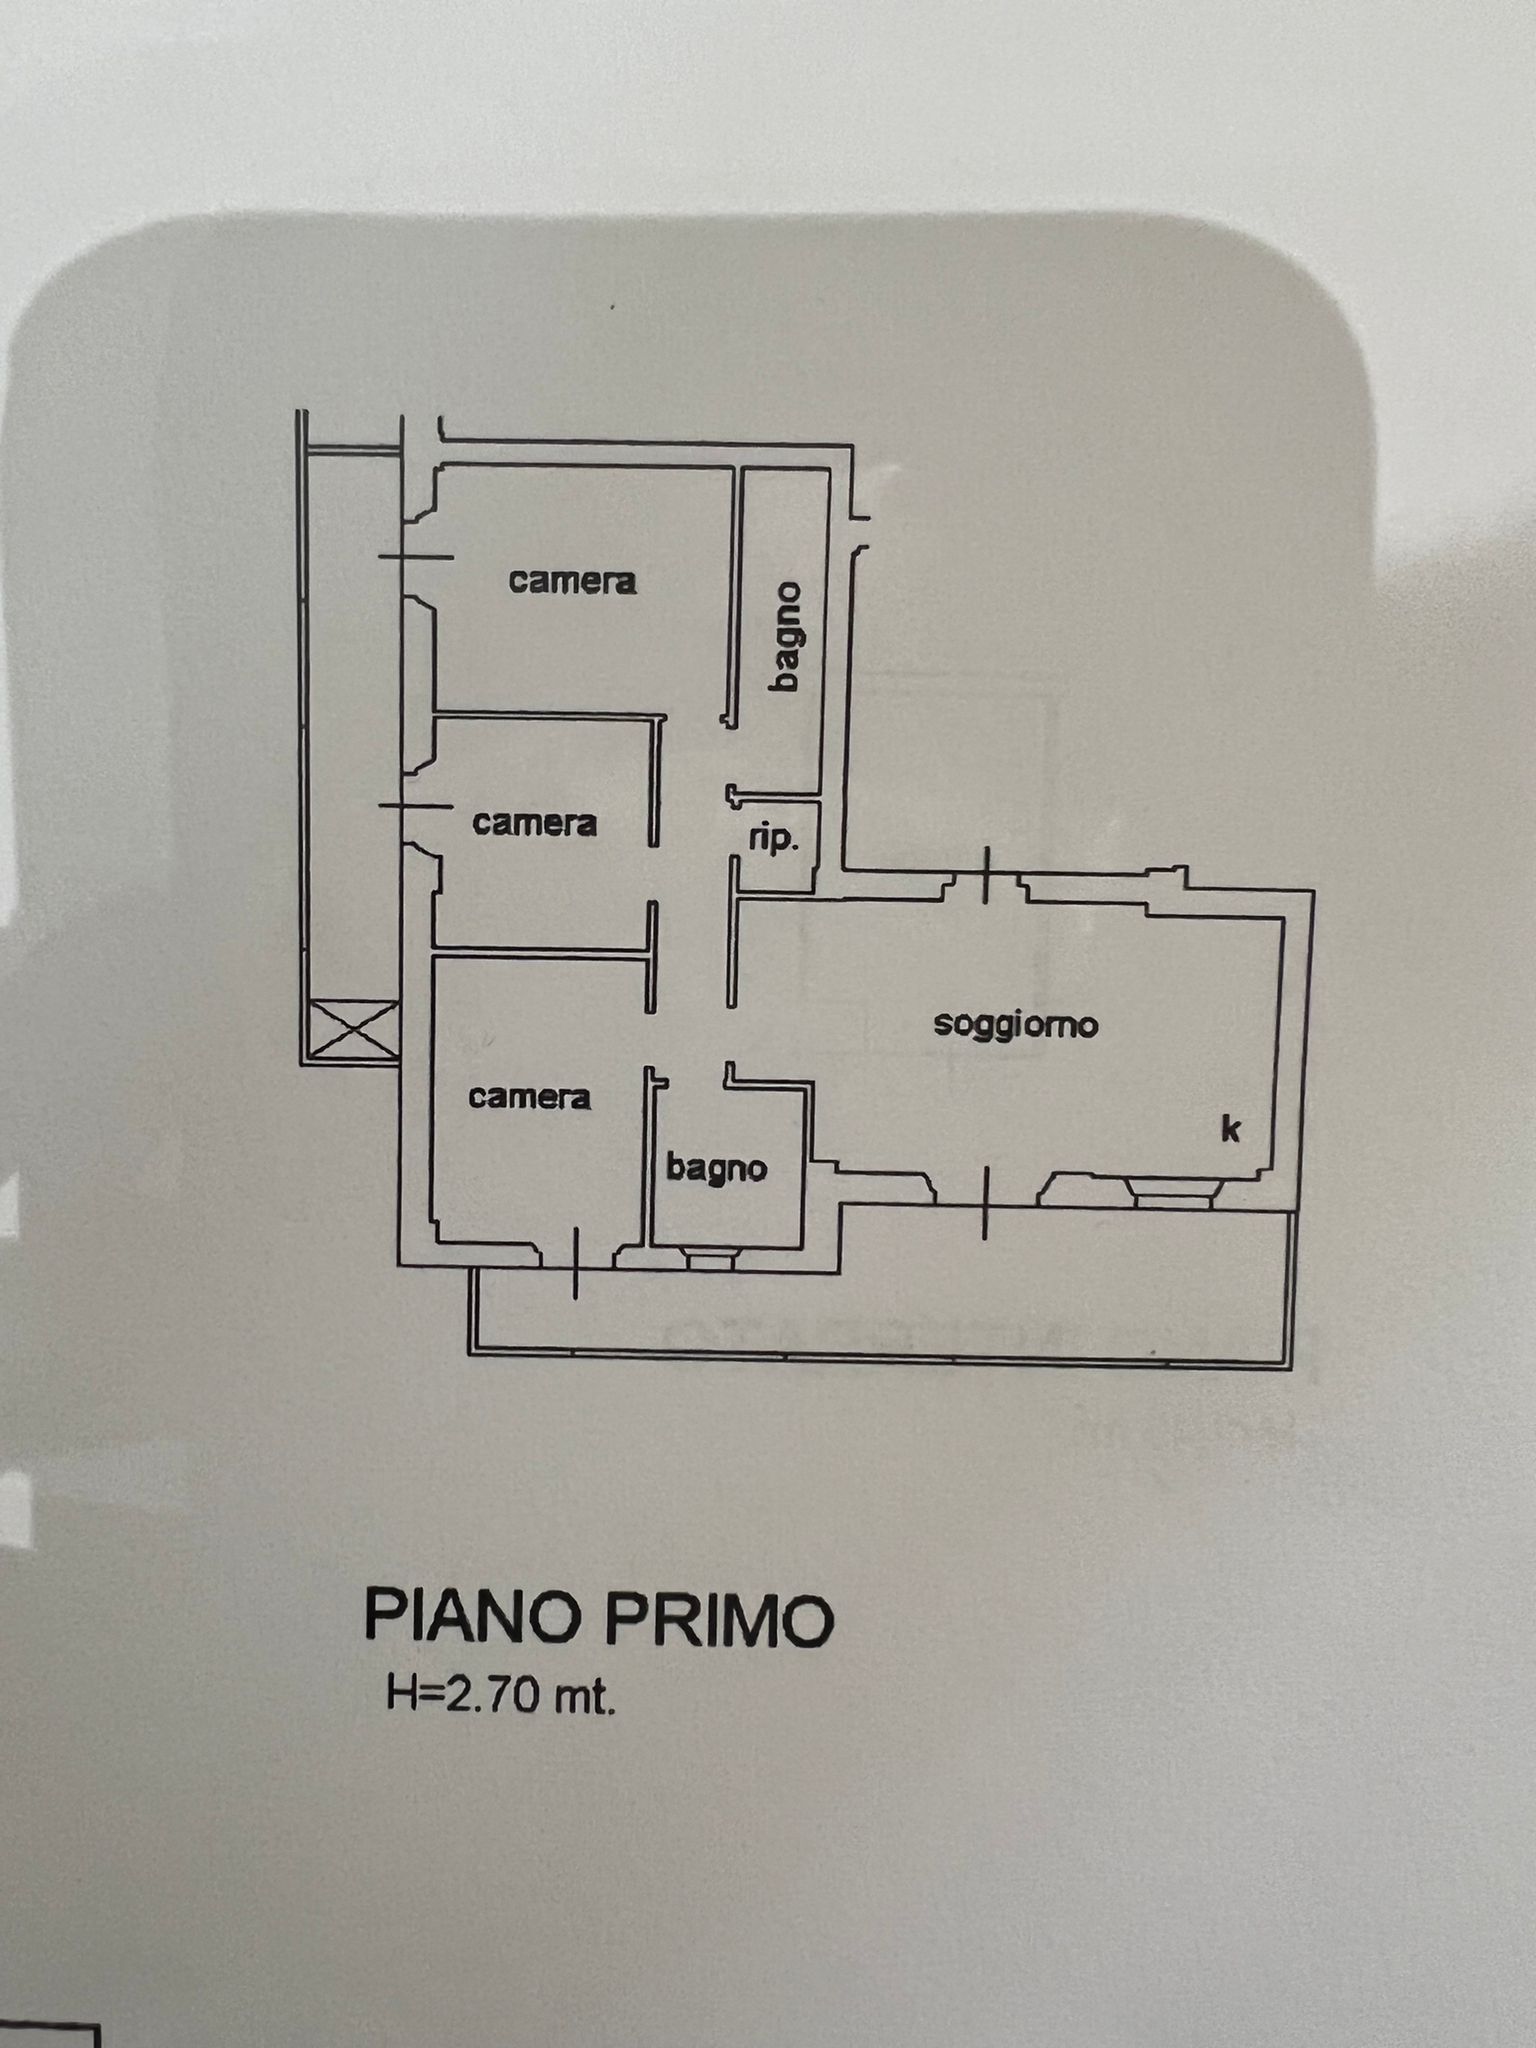 Planimetria dell'appartamento